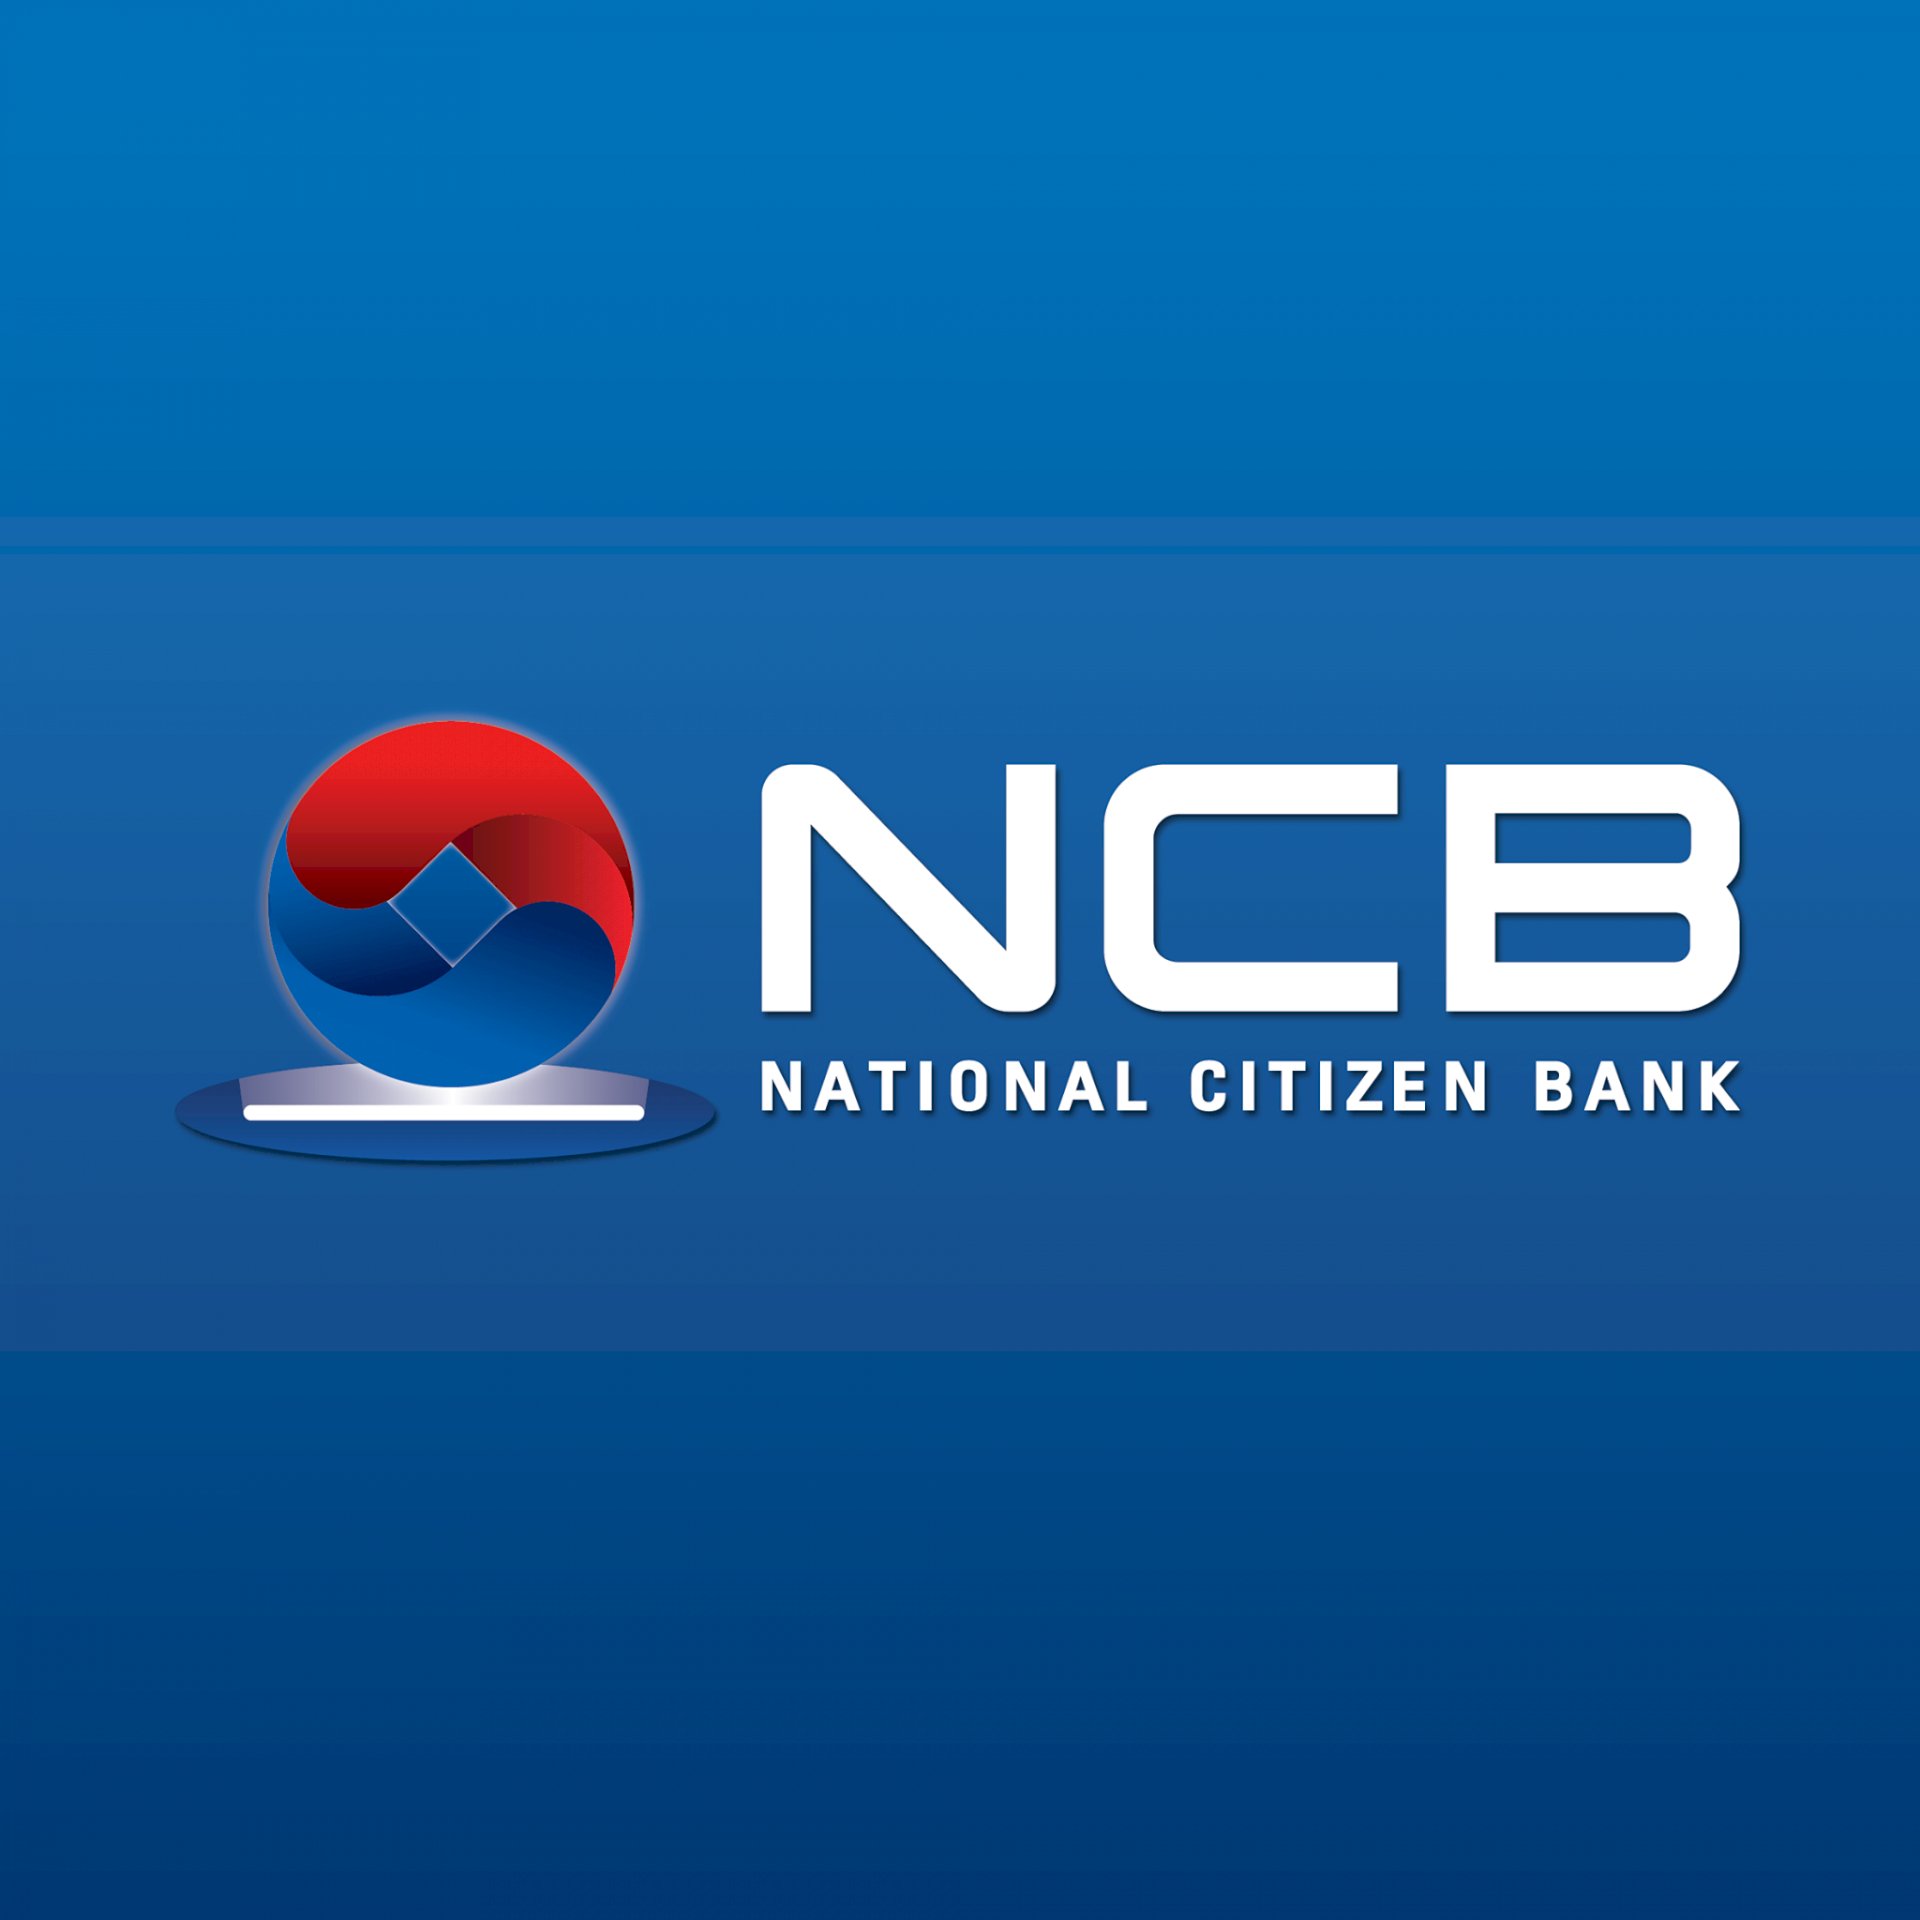 Tải logo NCB (Ngân hàng Quốc Dân) file AI, SVG, EPS, PNG, JPG, PDF